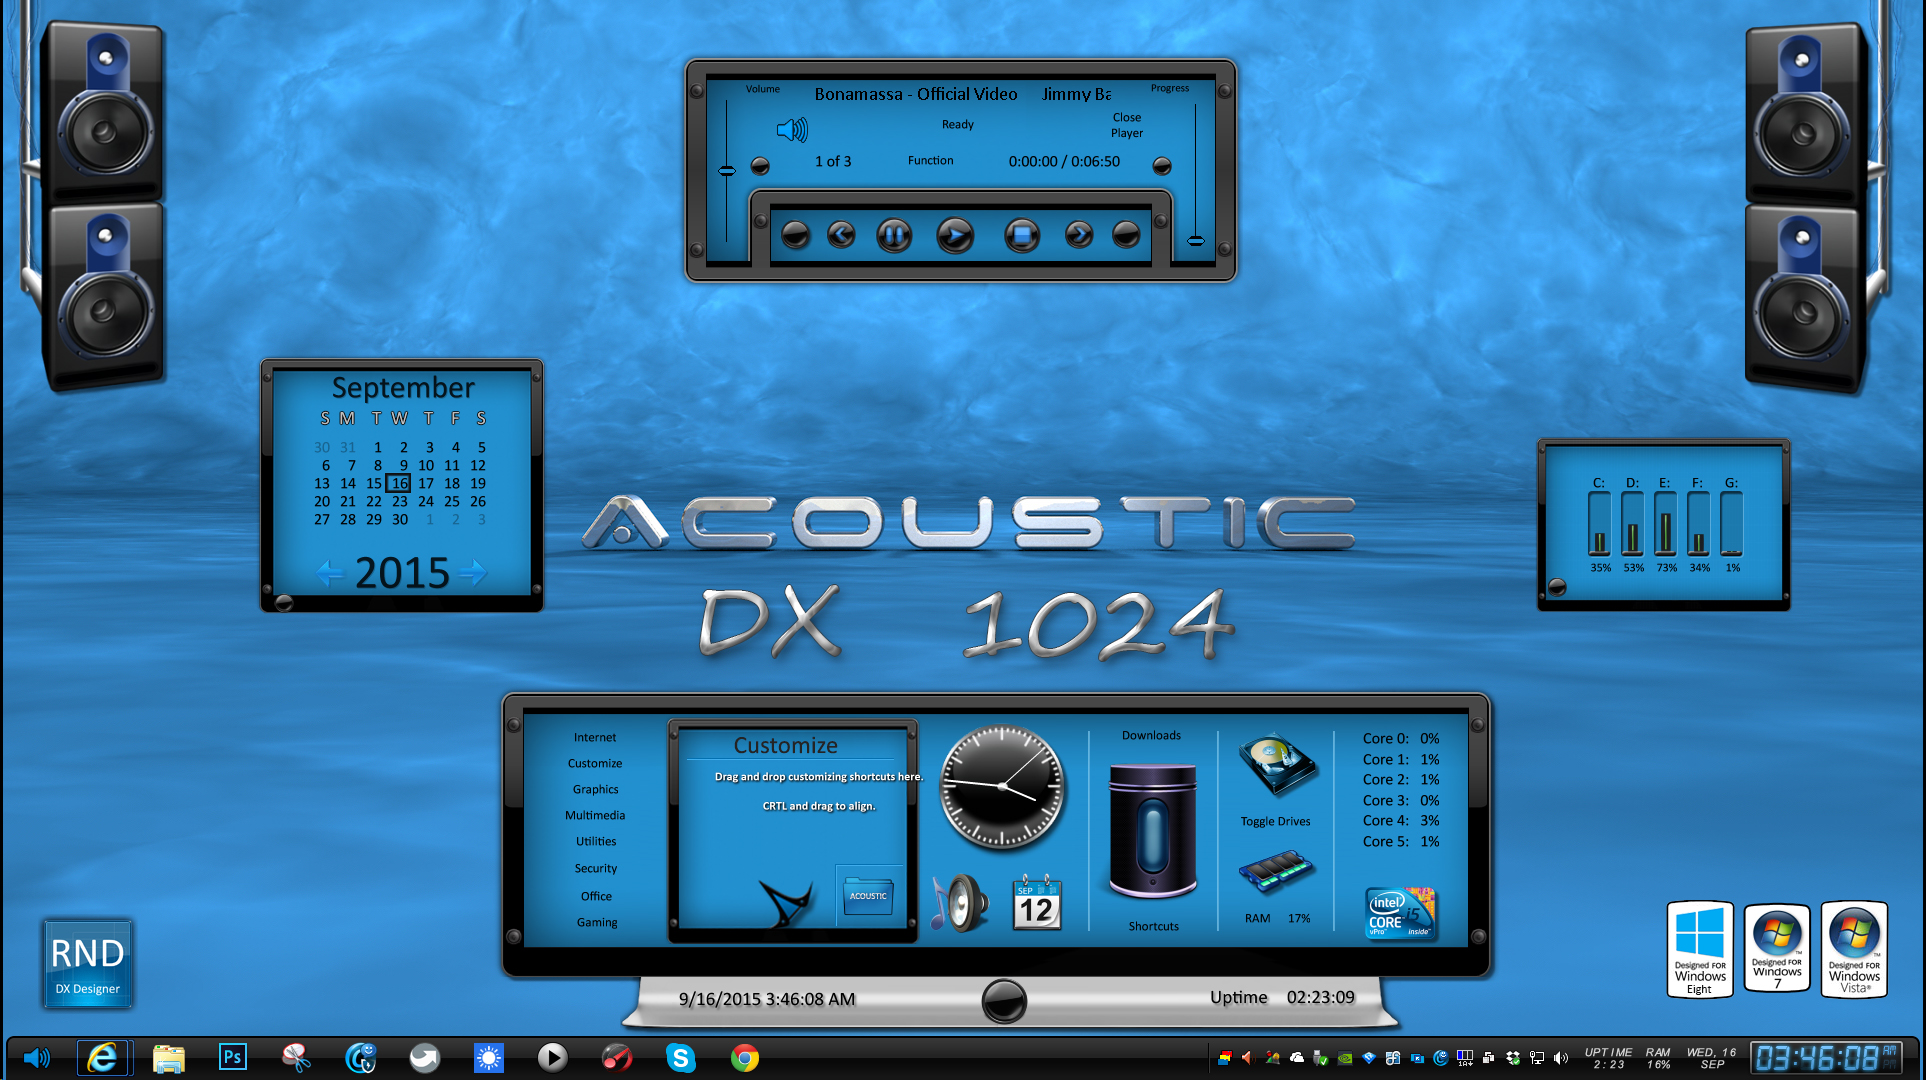 Desktopx For Windows 10